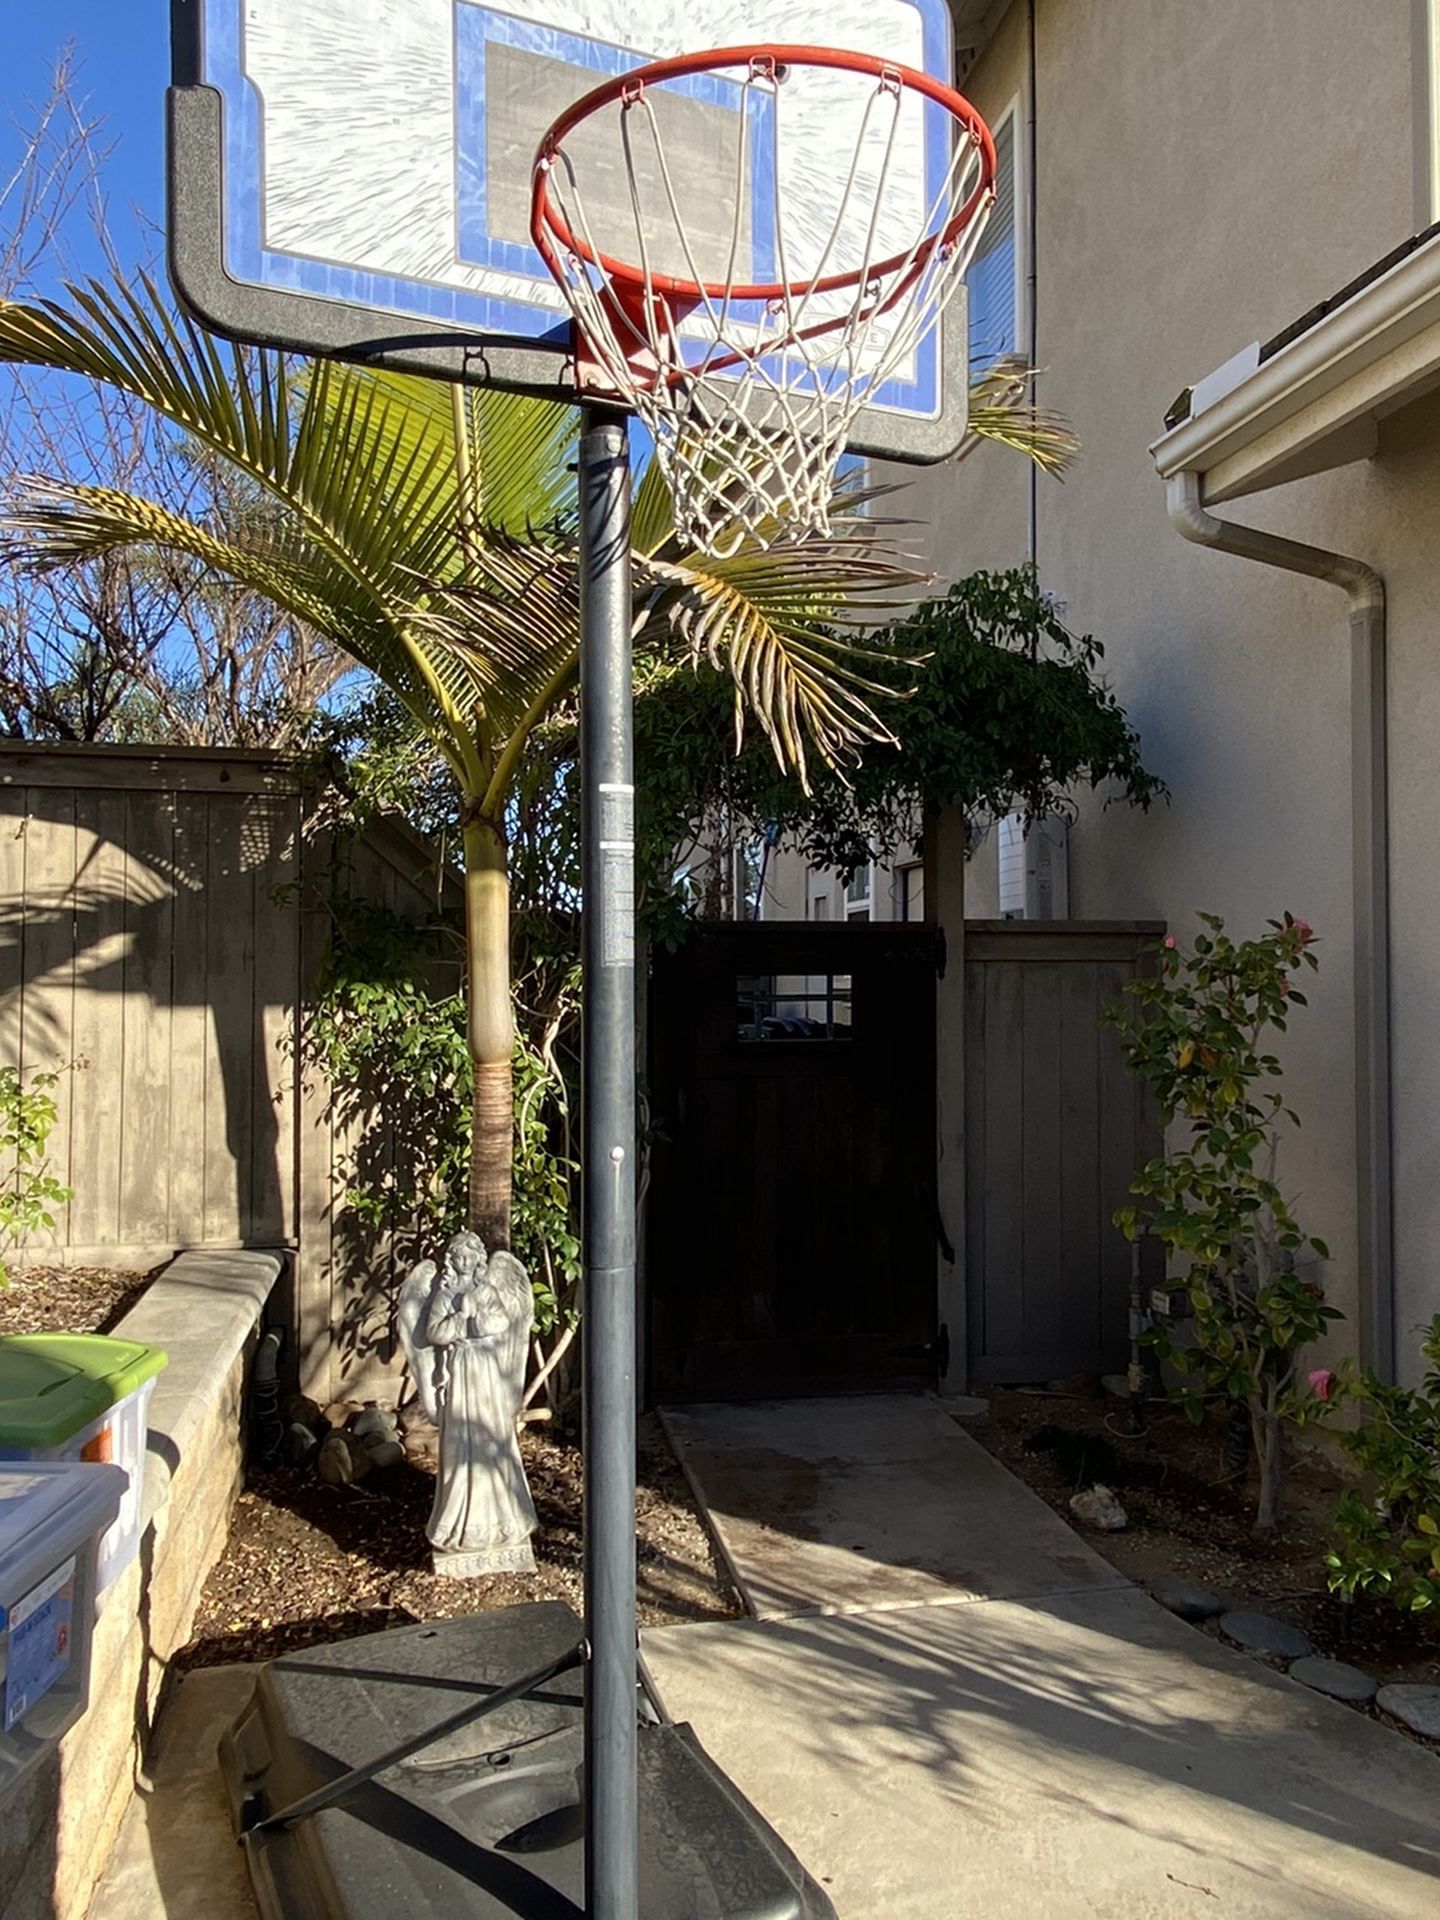 Lifetime Adjustable And Portable Basketball Hoop